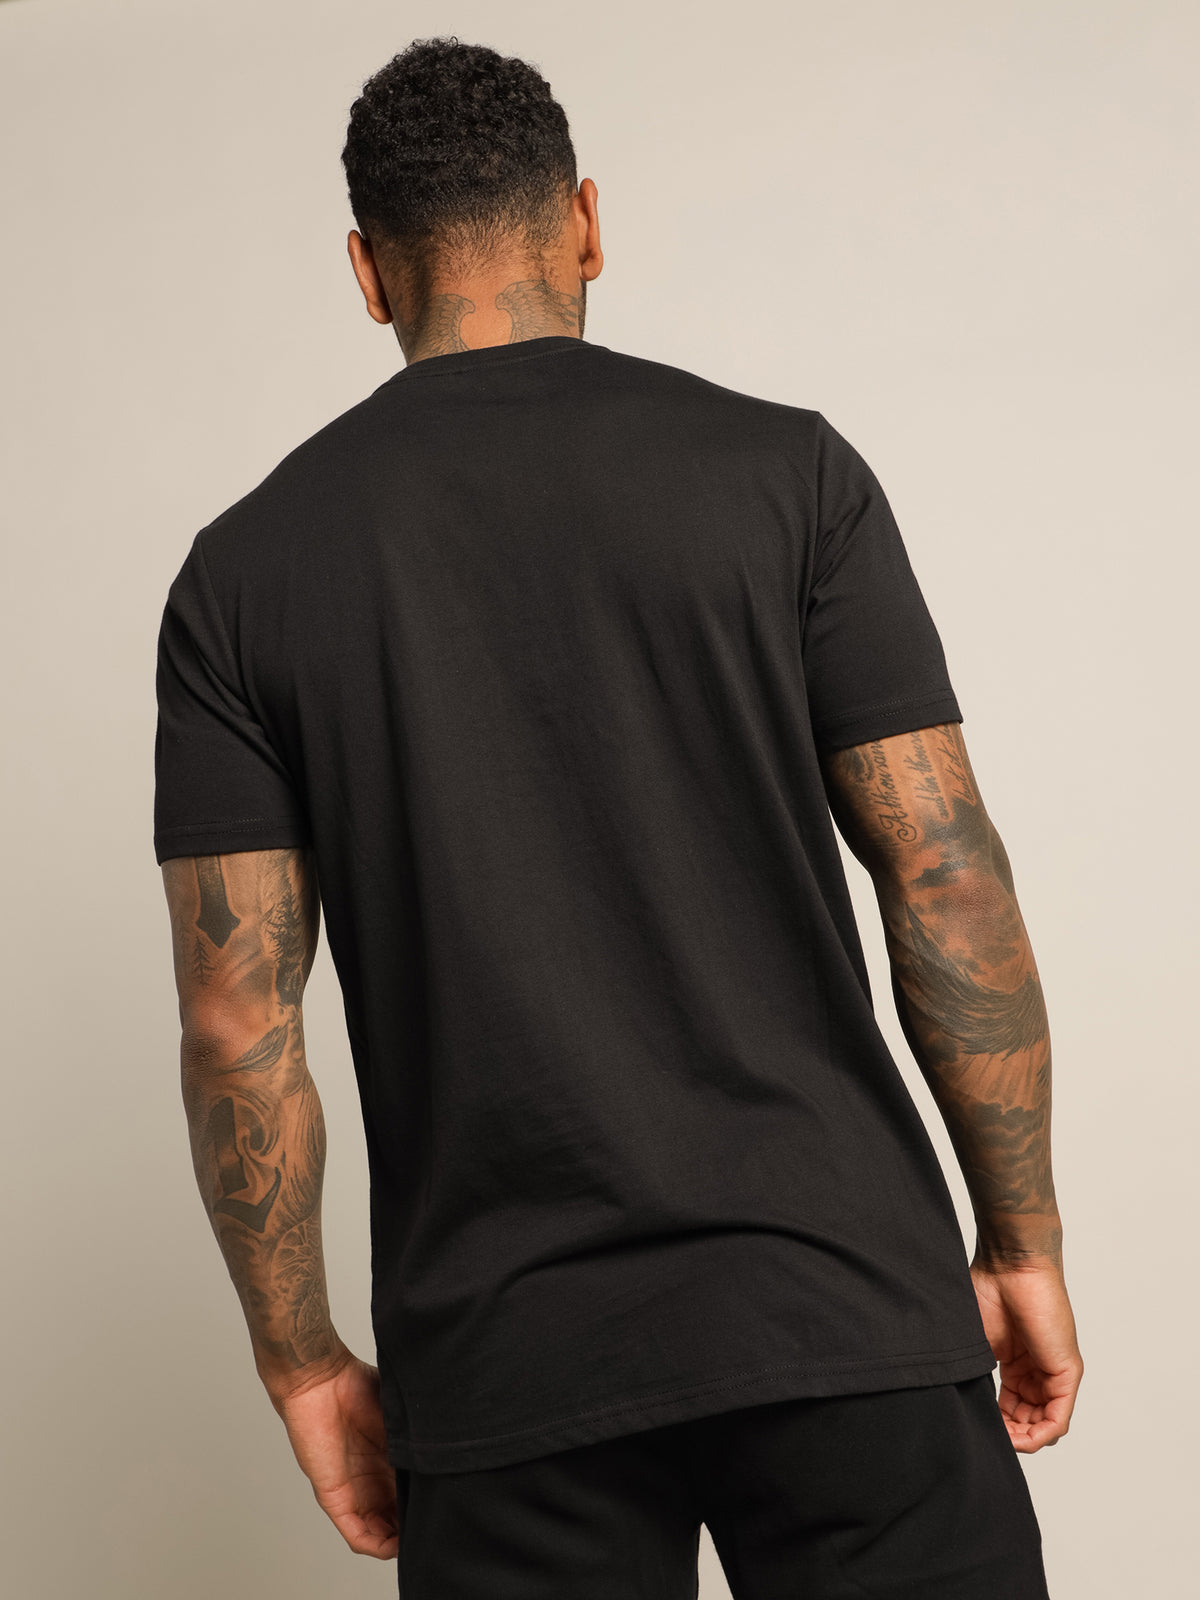 Andromedan T-Shirt in Black